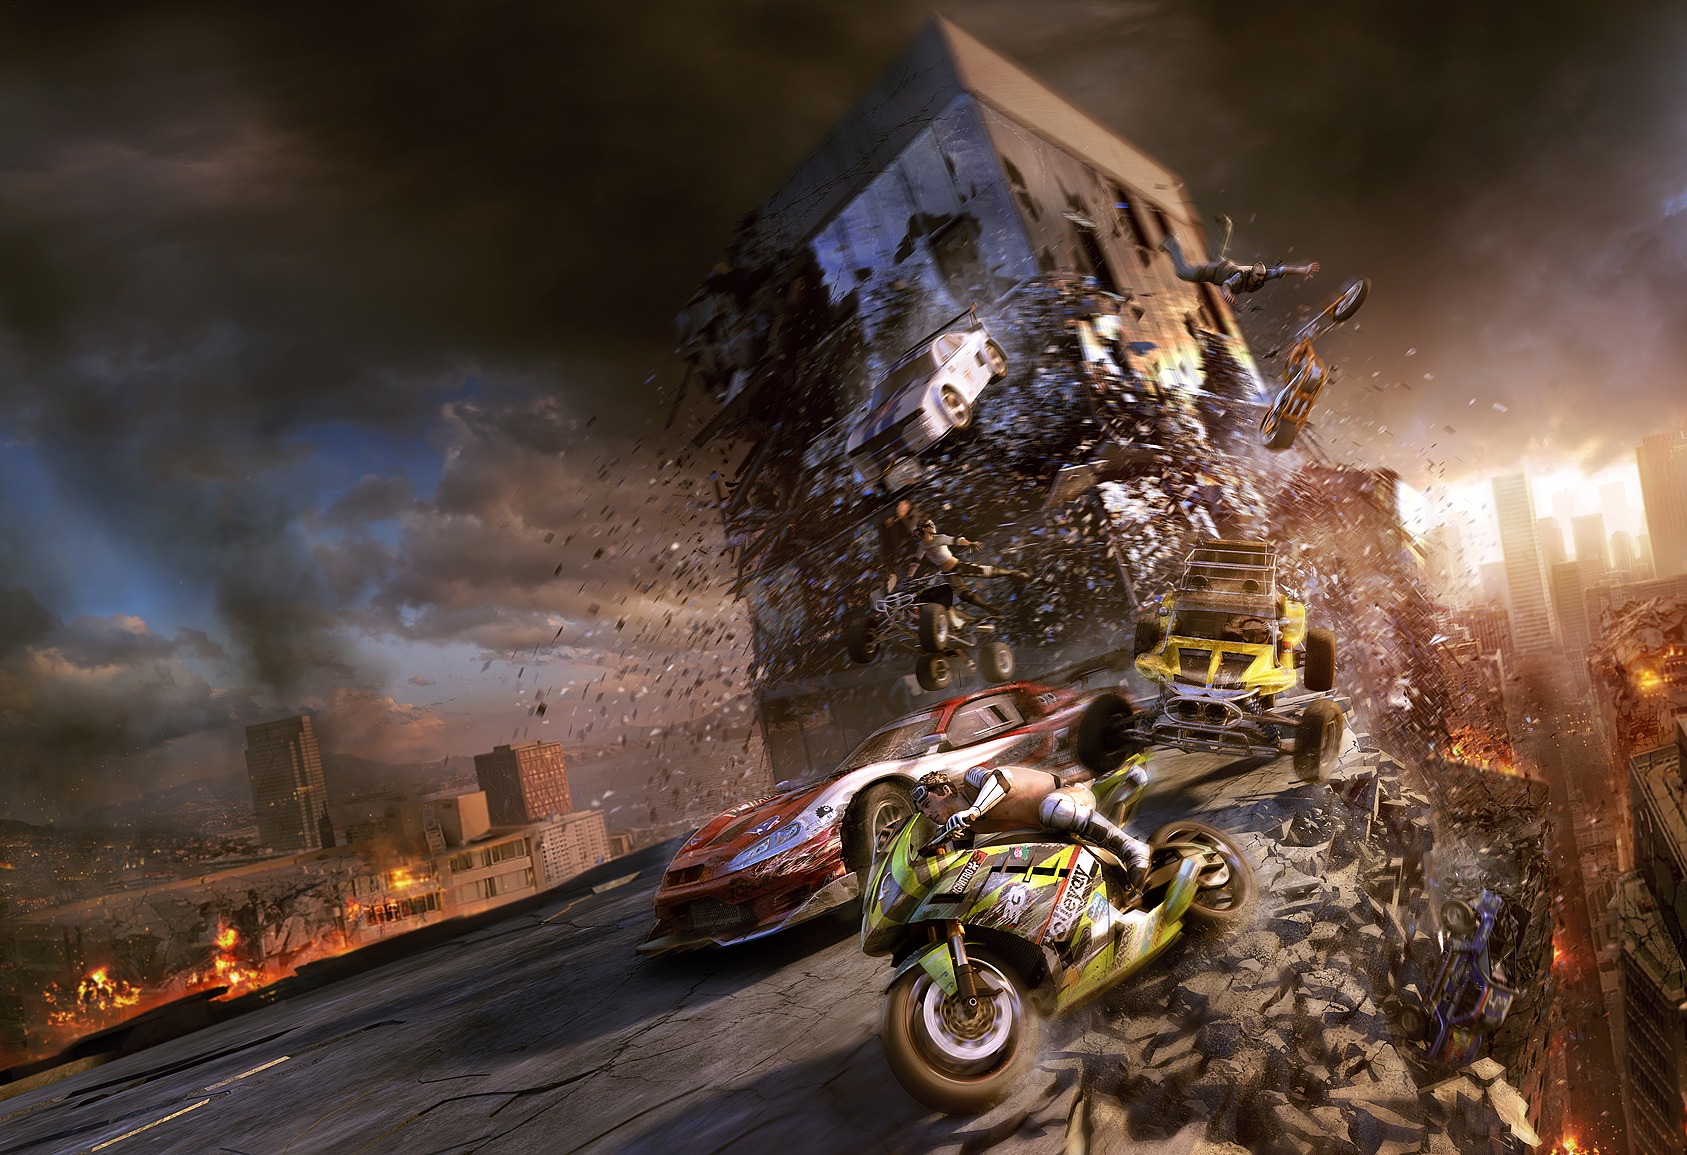 Free download wallpaper Video Game, Motorstorm, Motorstorm: Apocalypse on your PC desktop